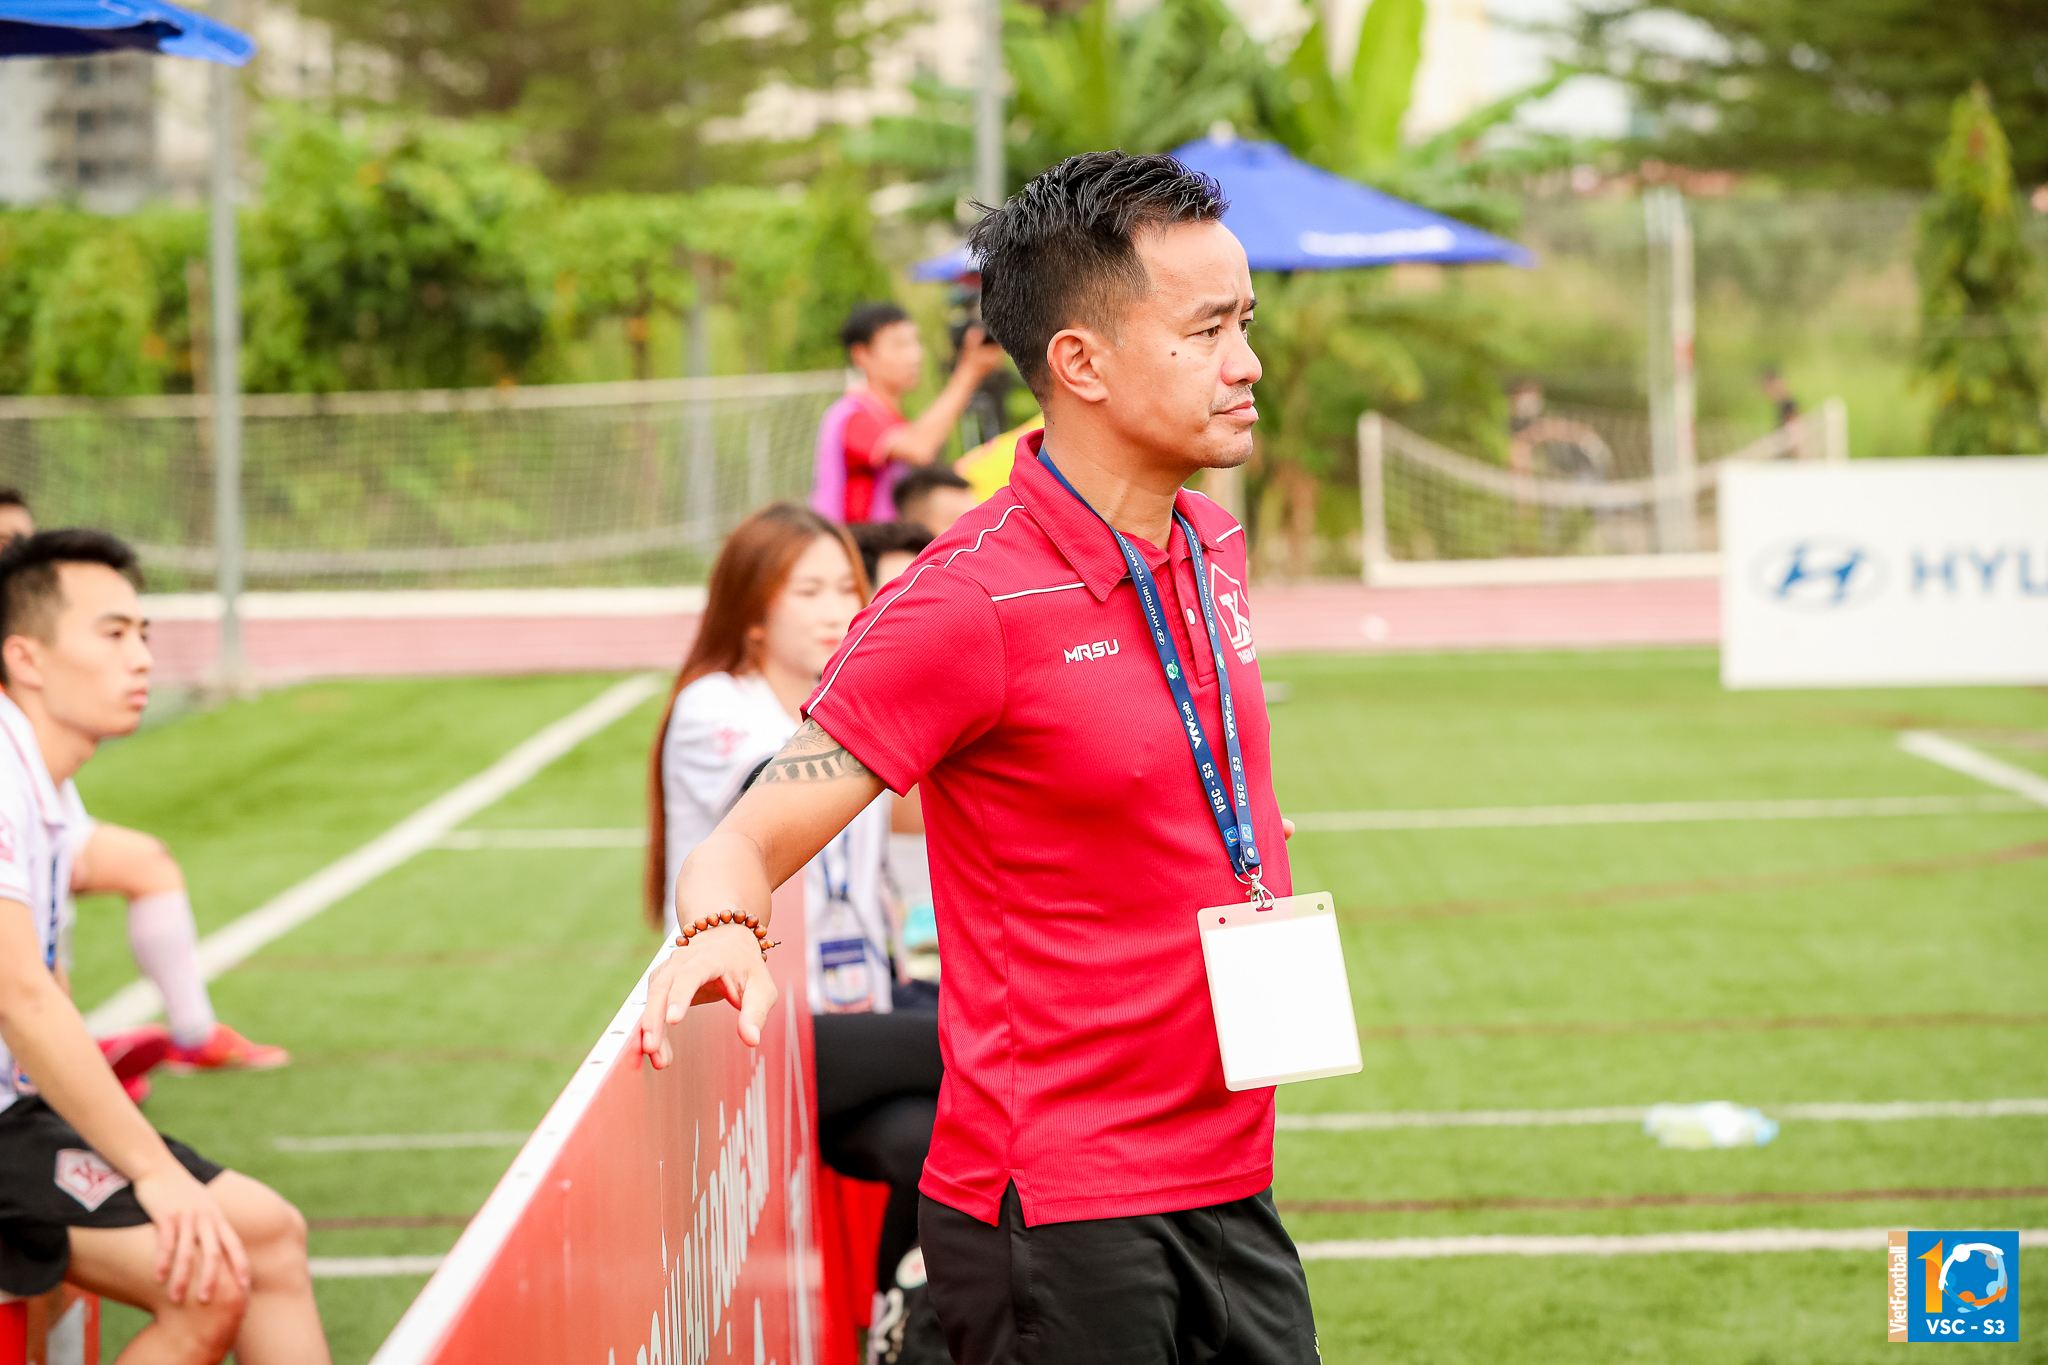 HLV Hiệp cóc (Thiên Khôi FC): “ Hệ thống thi đấu bóng đá 7 người quốc gia đang ngày càng lan rộng đến nhiều địa phương”